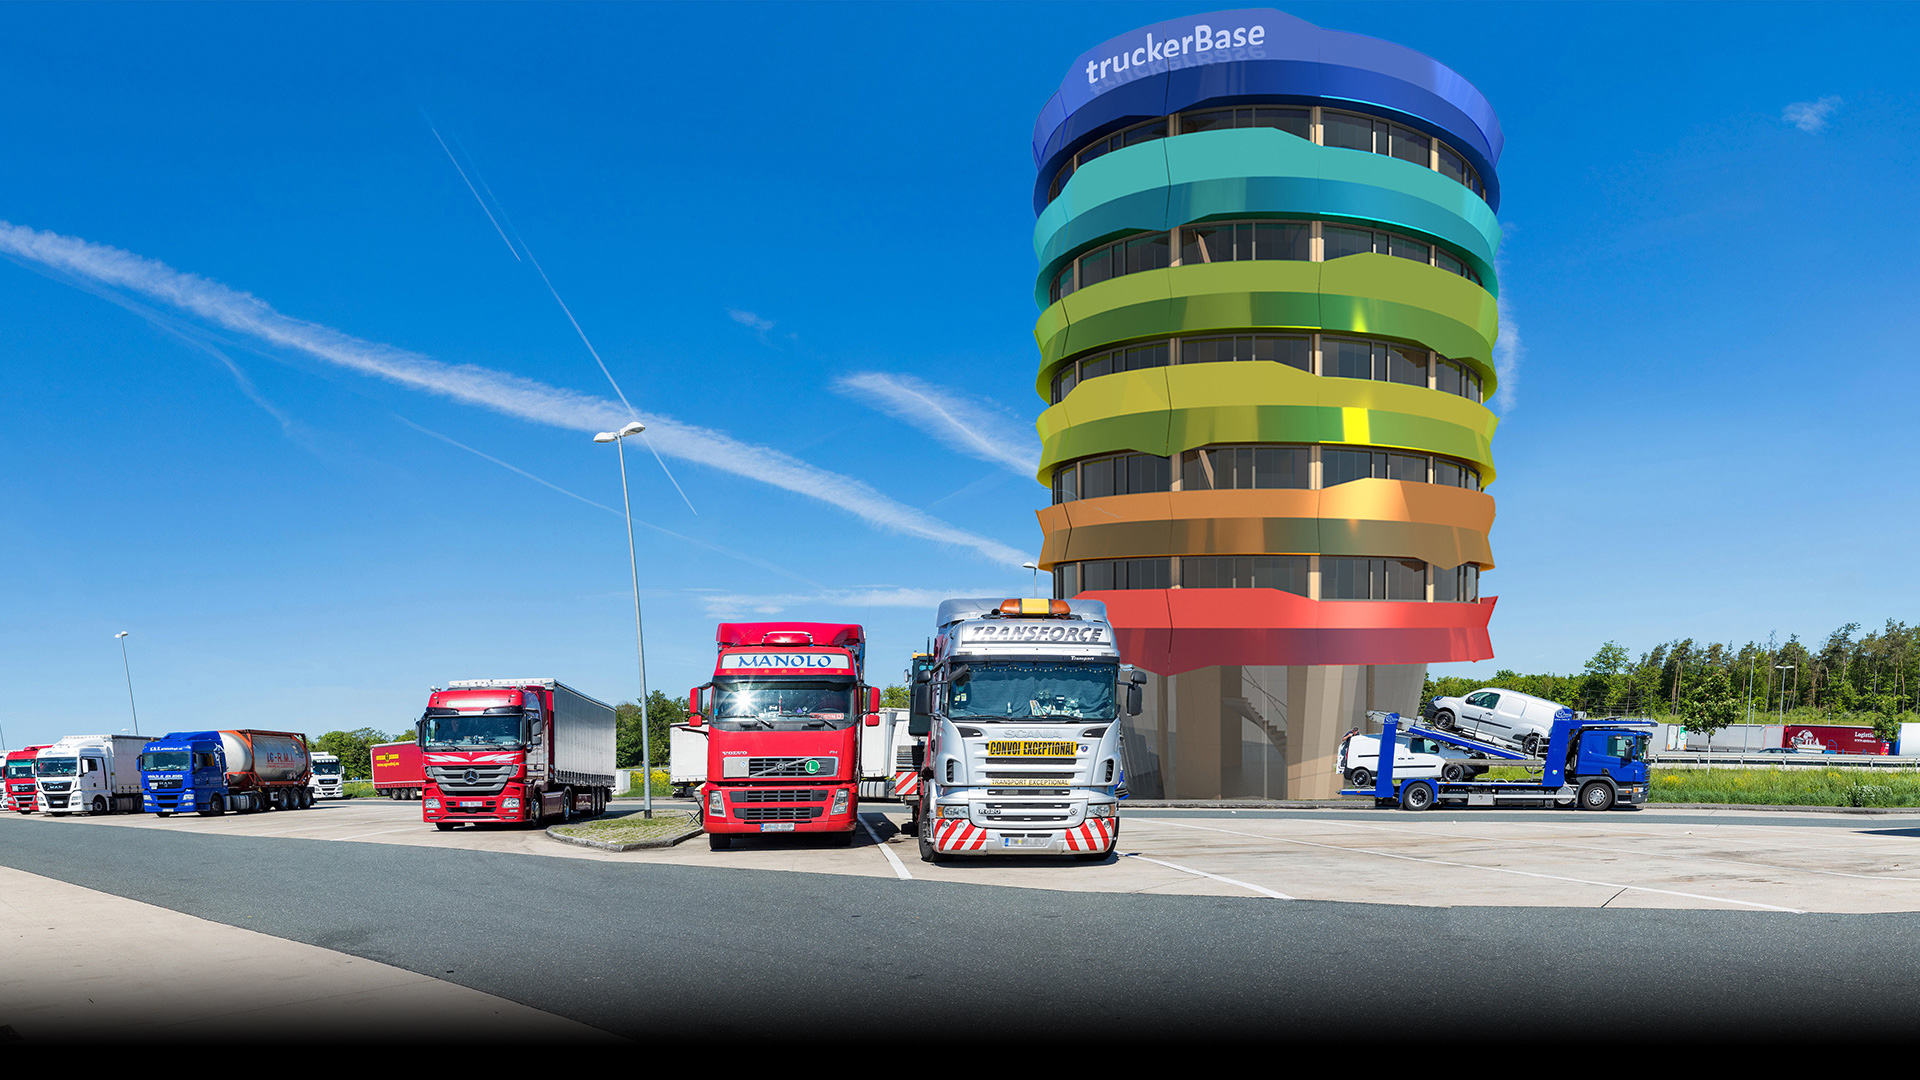 strohecker&partne-architekten-truckerbase-Turm-auf-Raststätte_shutterstock_verlauf